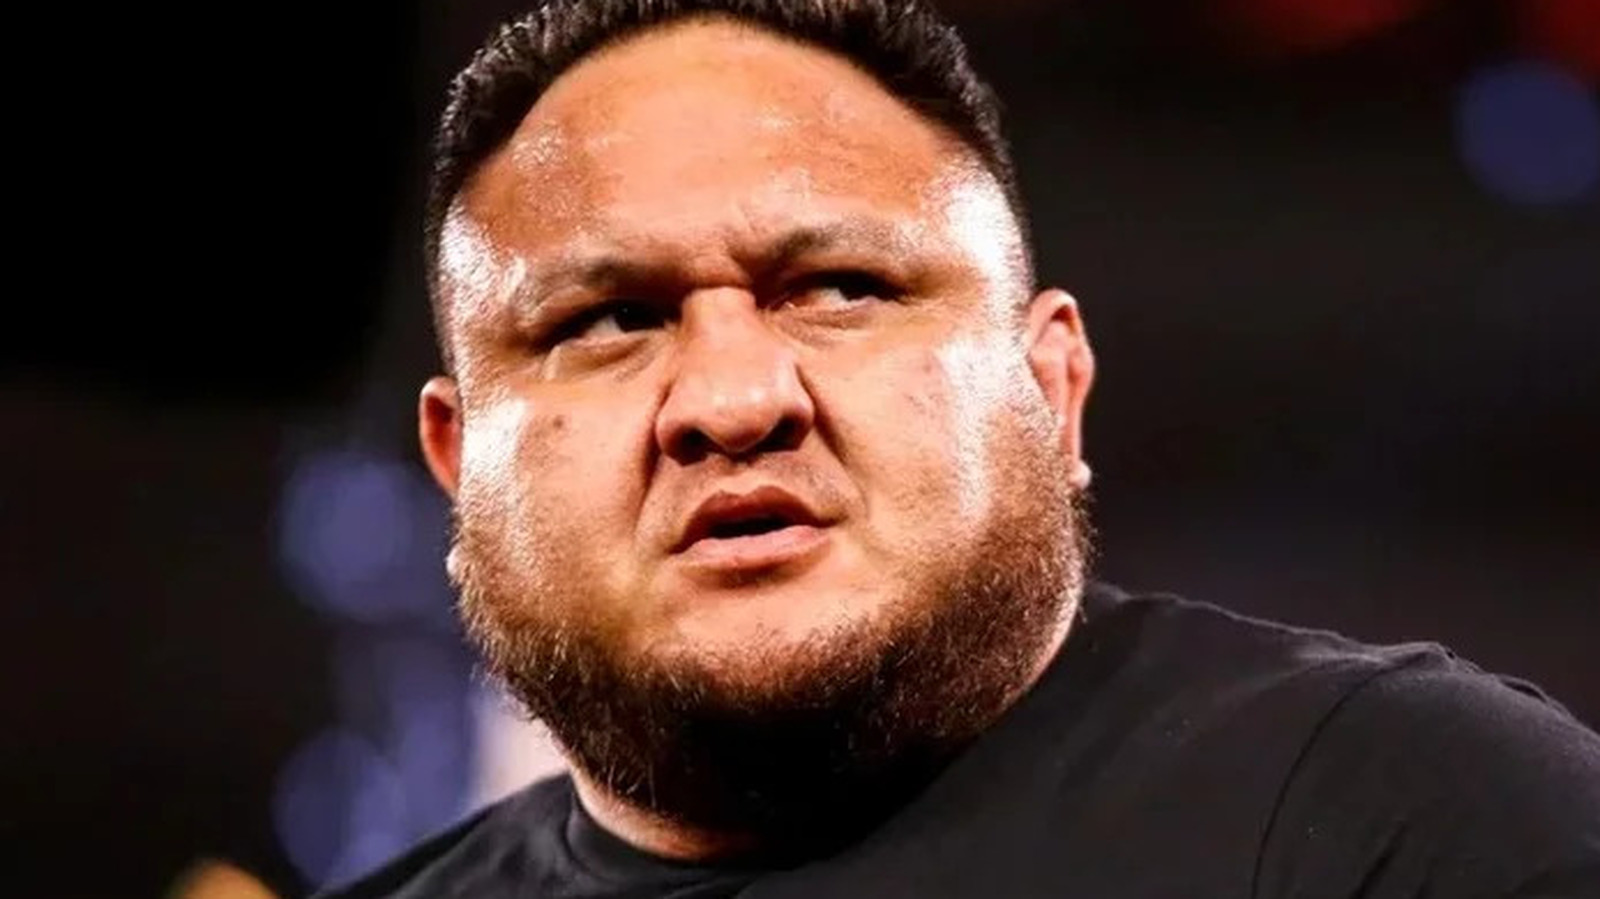 El campeón de AEW, Samoa Joe, presenta 'la fórmula' para el éxito